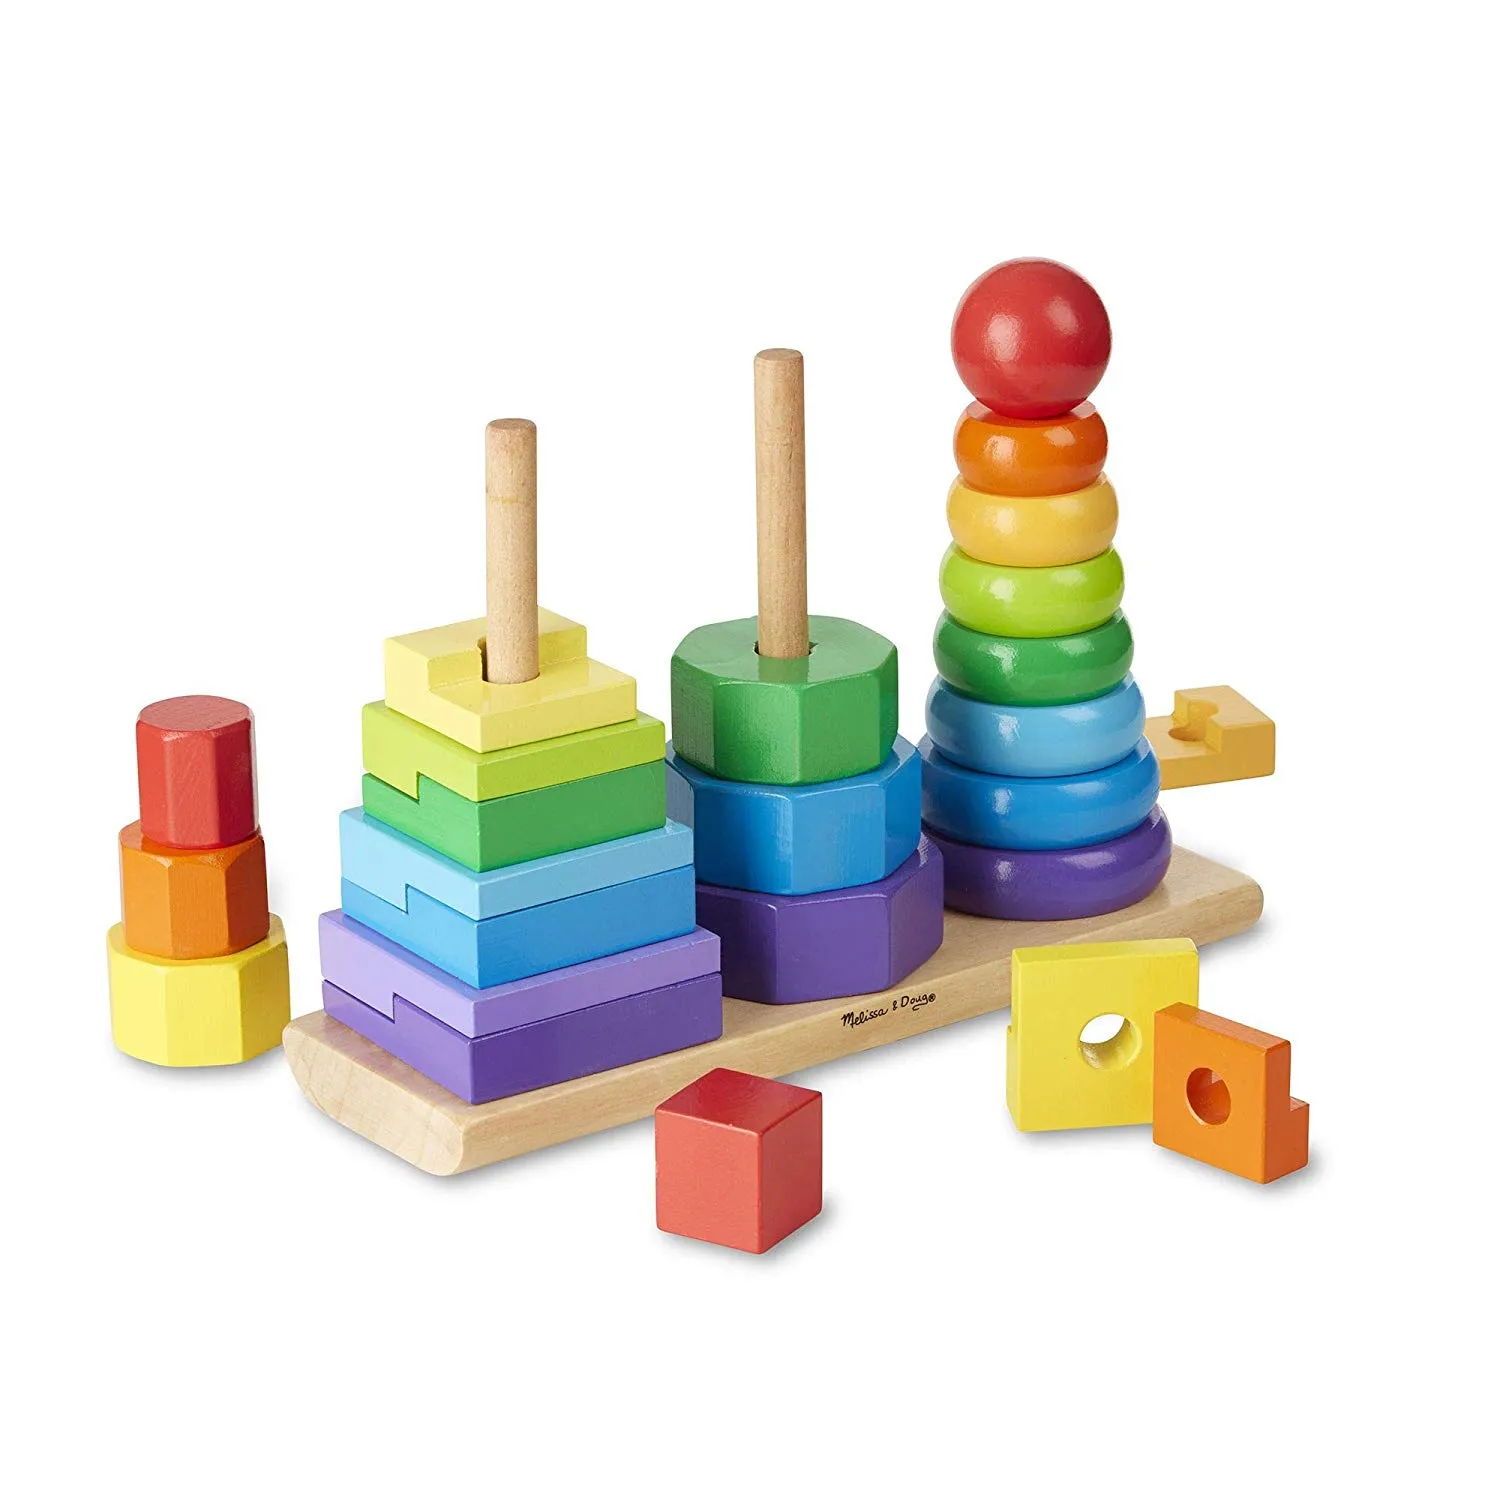 Sélection de jeux Montessori, conçus pour les 3-6 ans